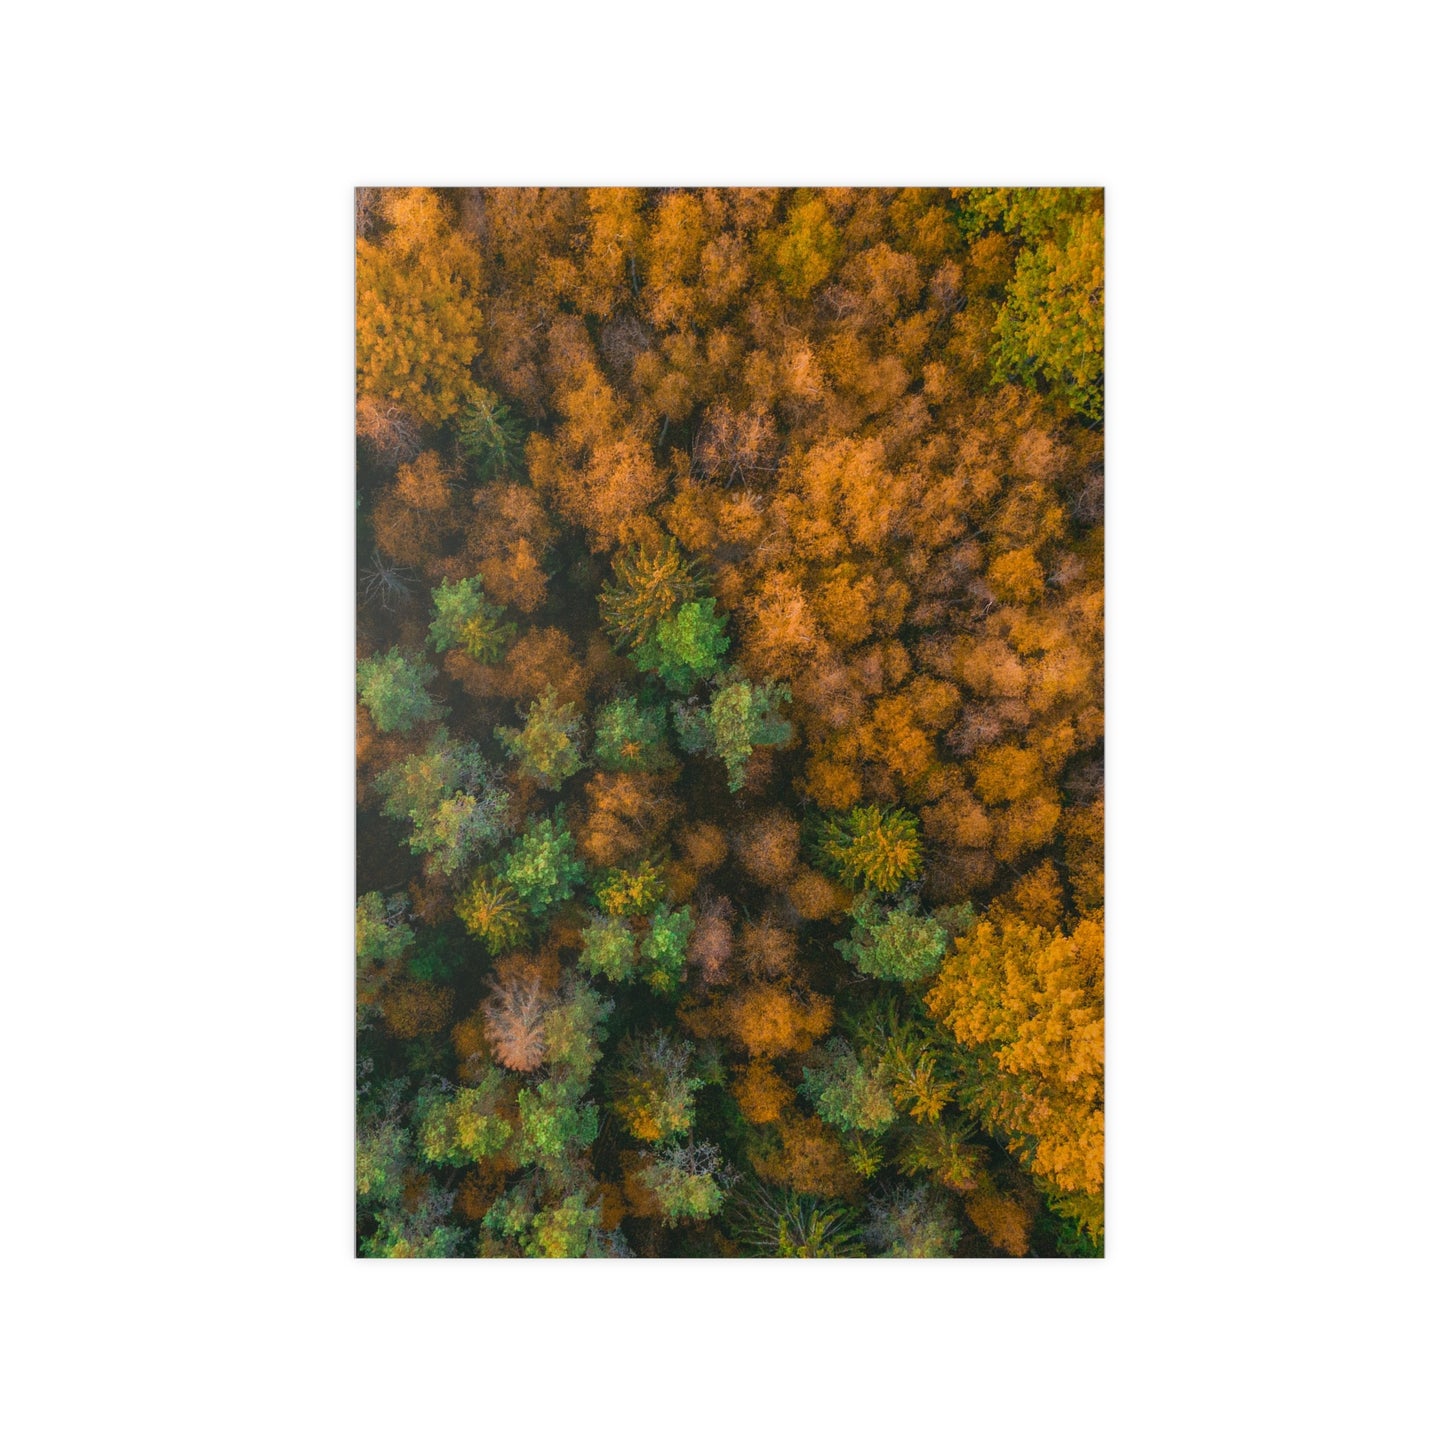 Autumn in Estonia